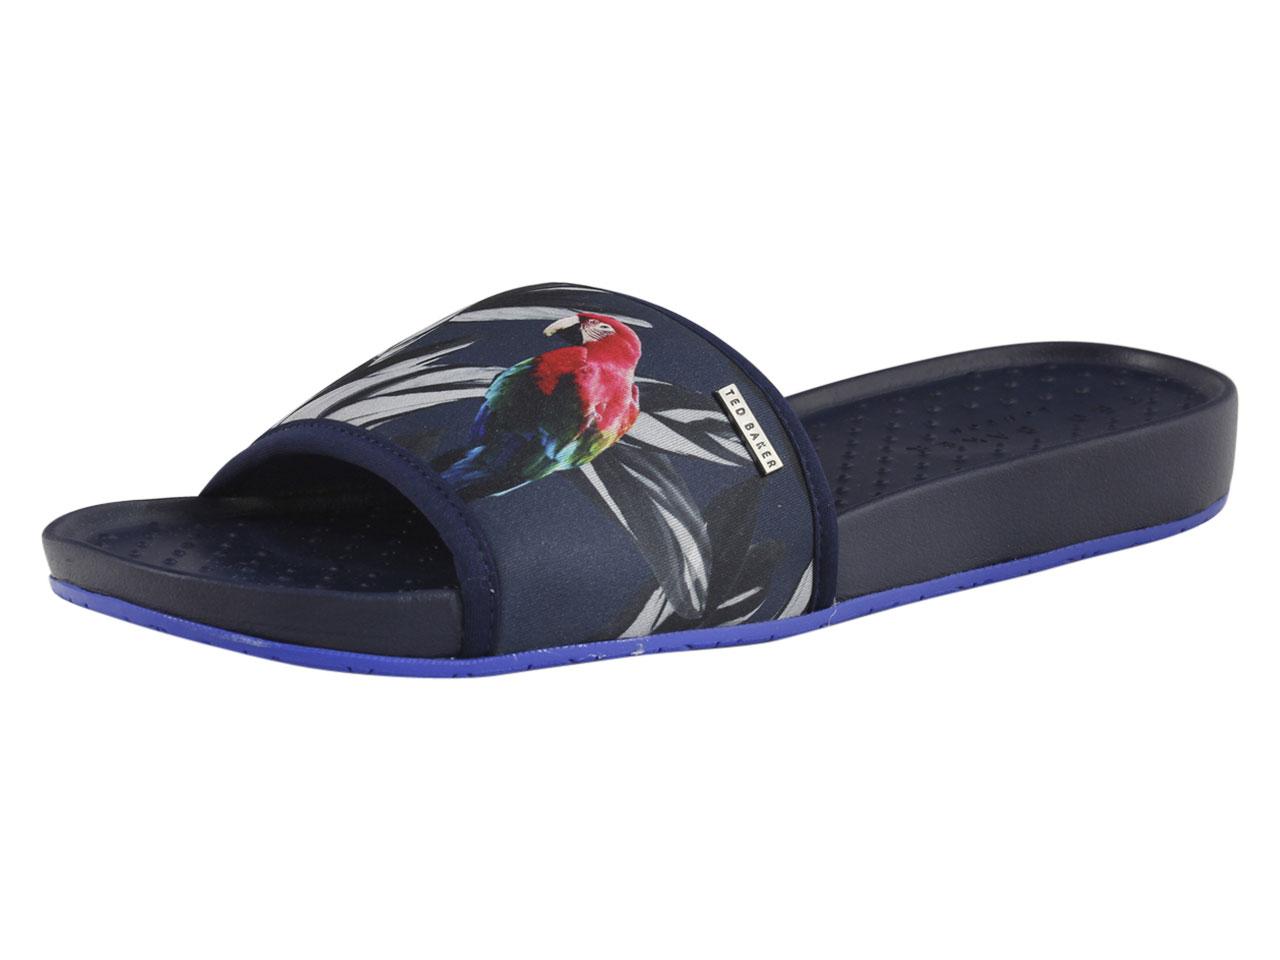 Ted Baker Men's Sauldi Slides Sandals Shoes - Blue - 11 D(M) US